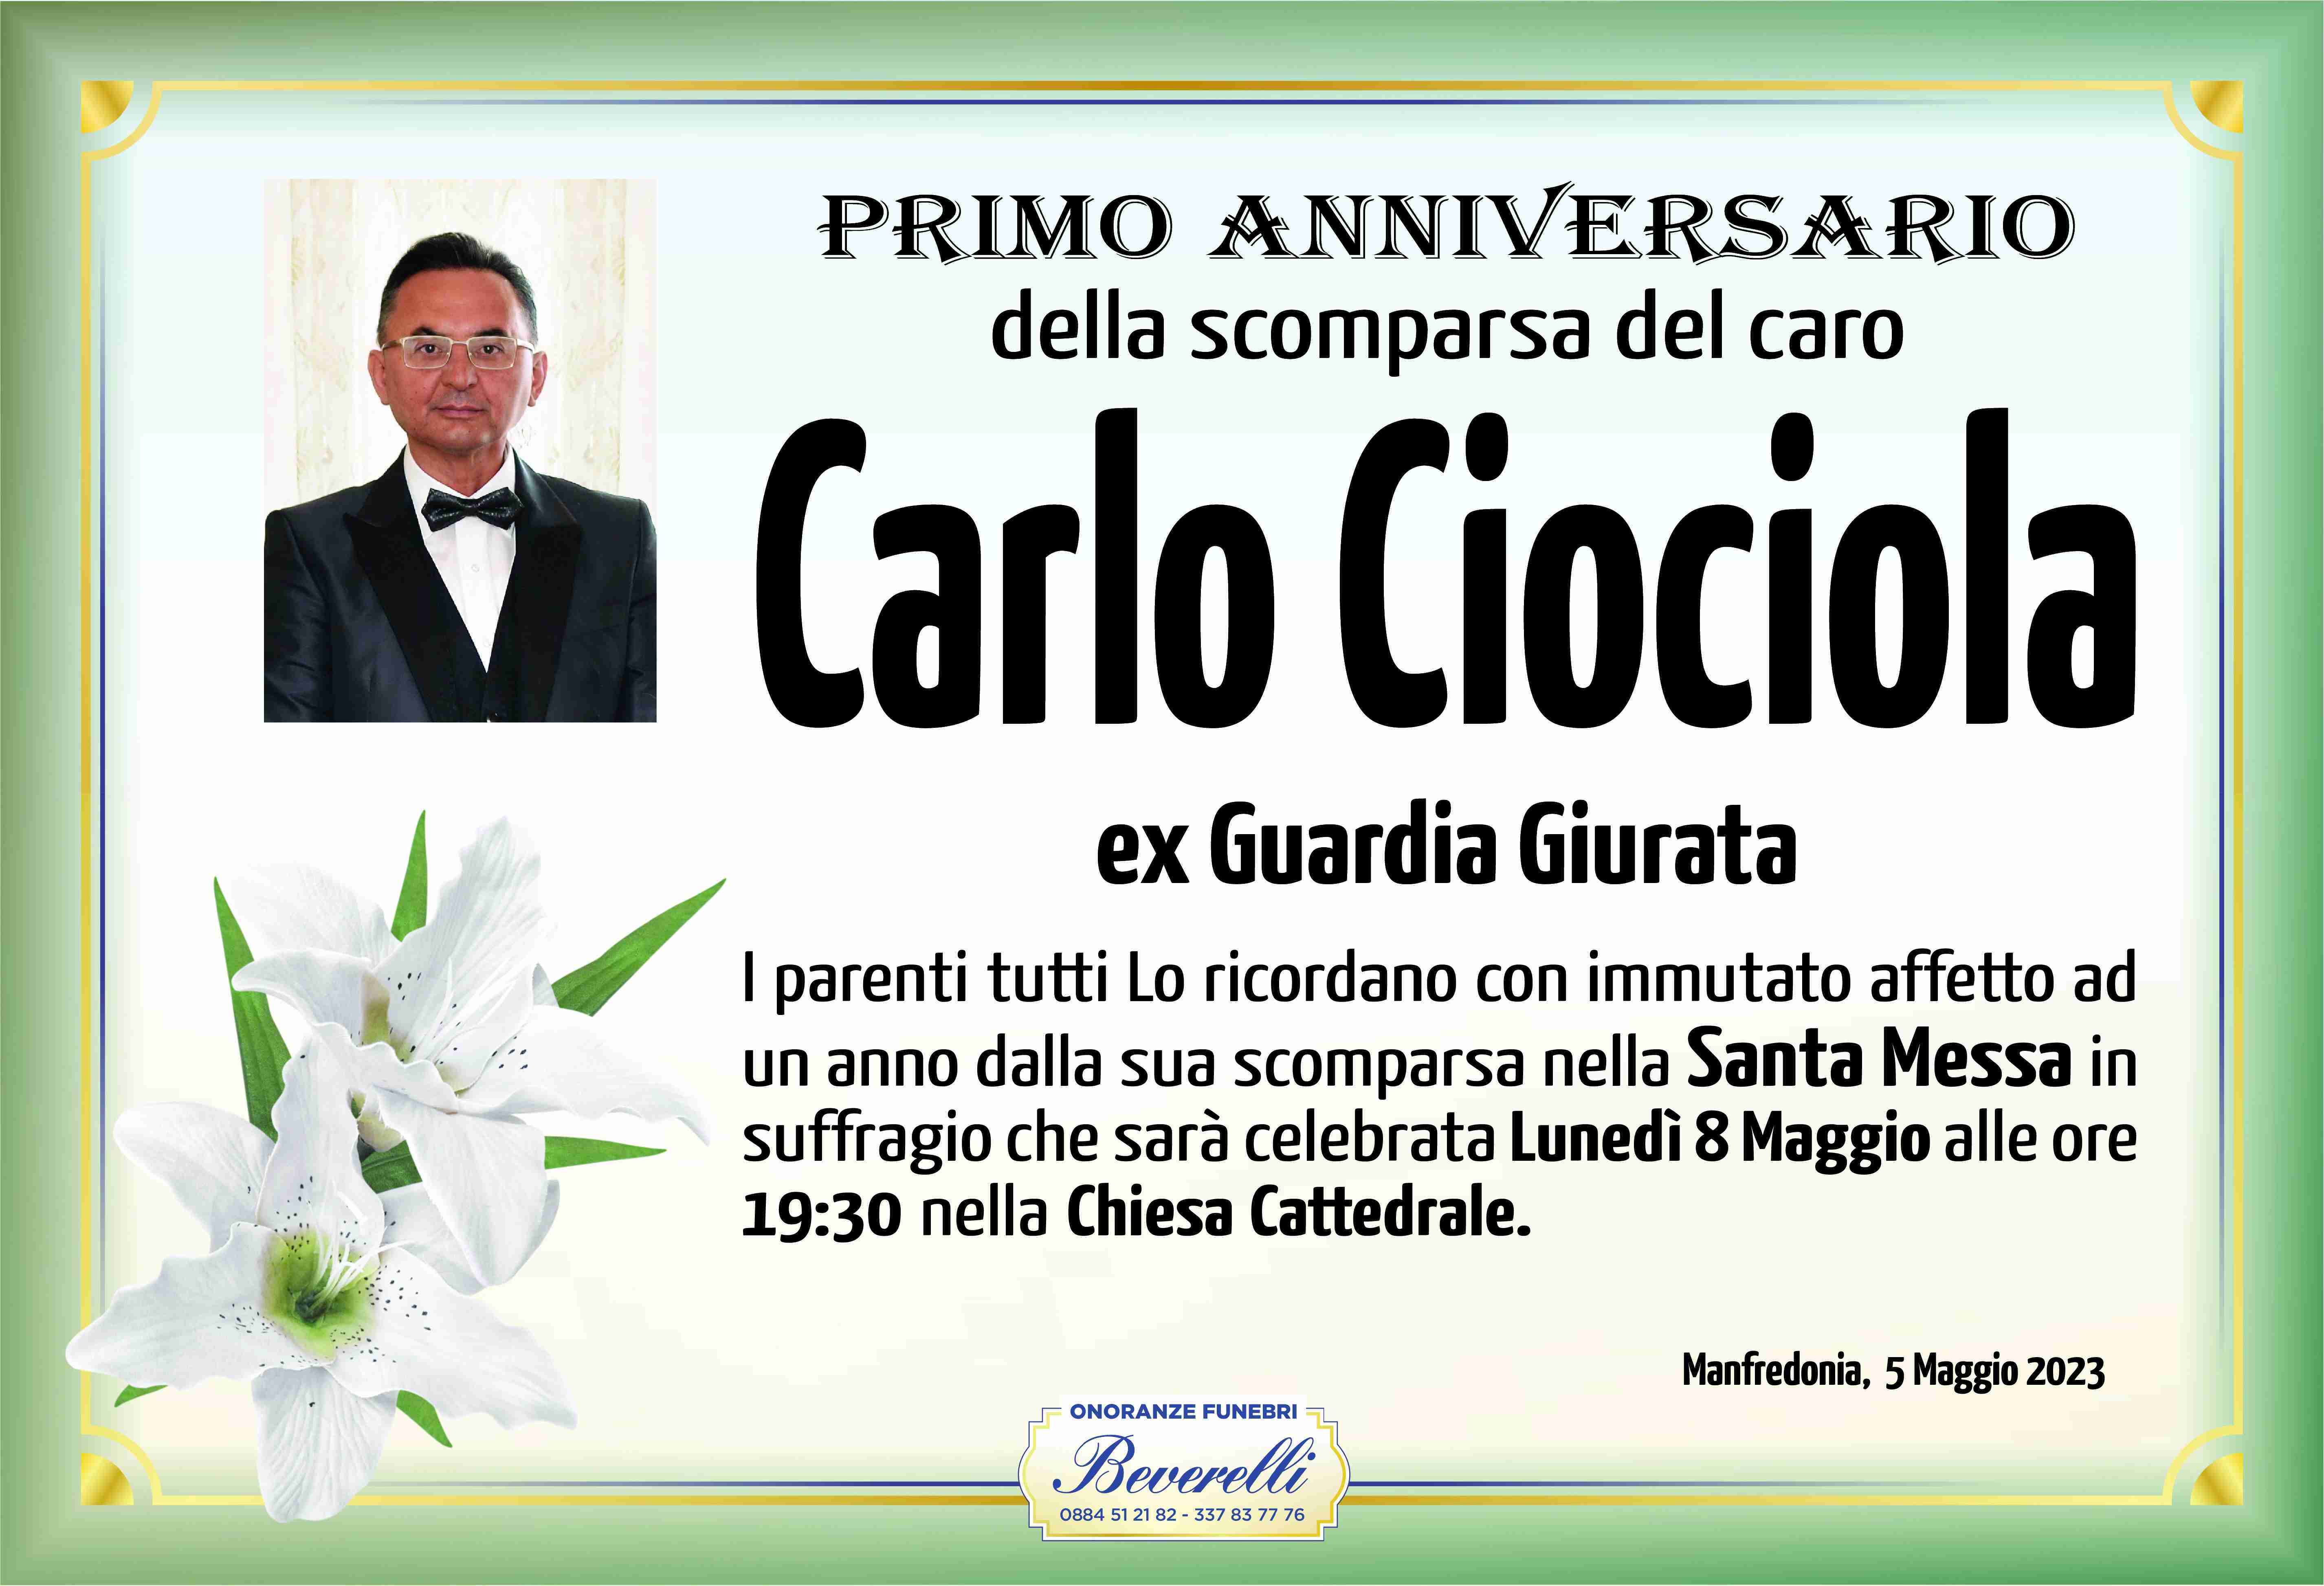 Carlo Ciociola